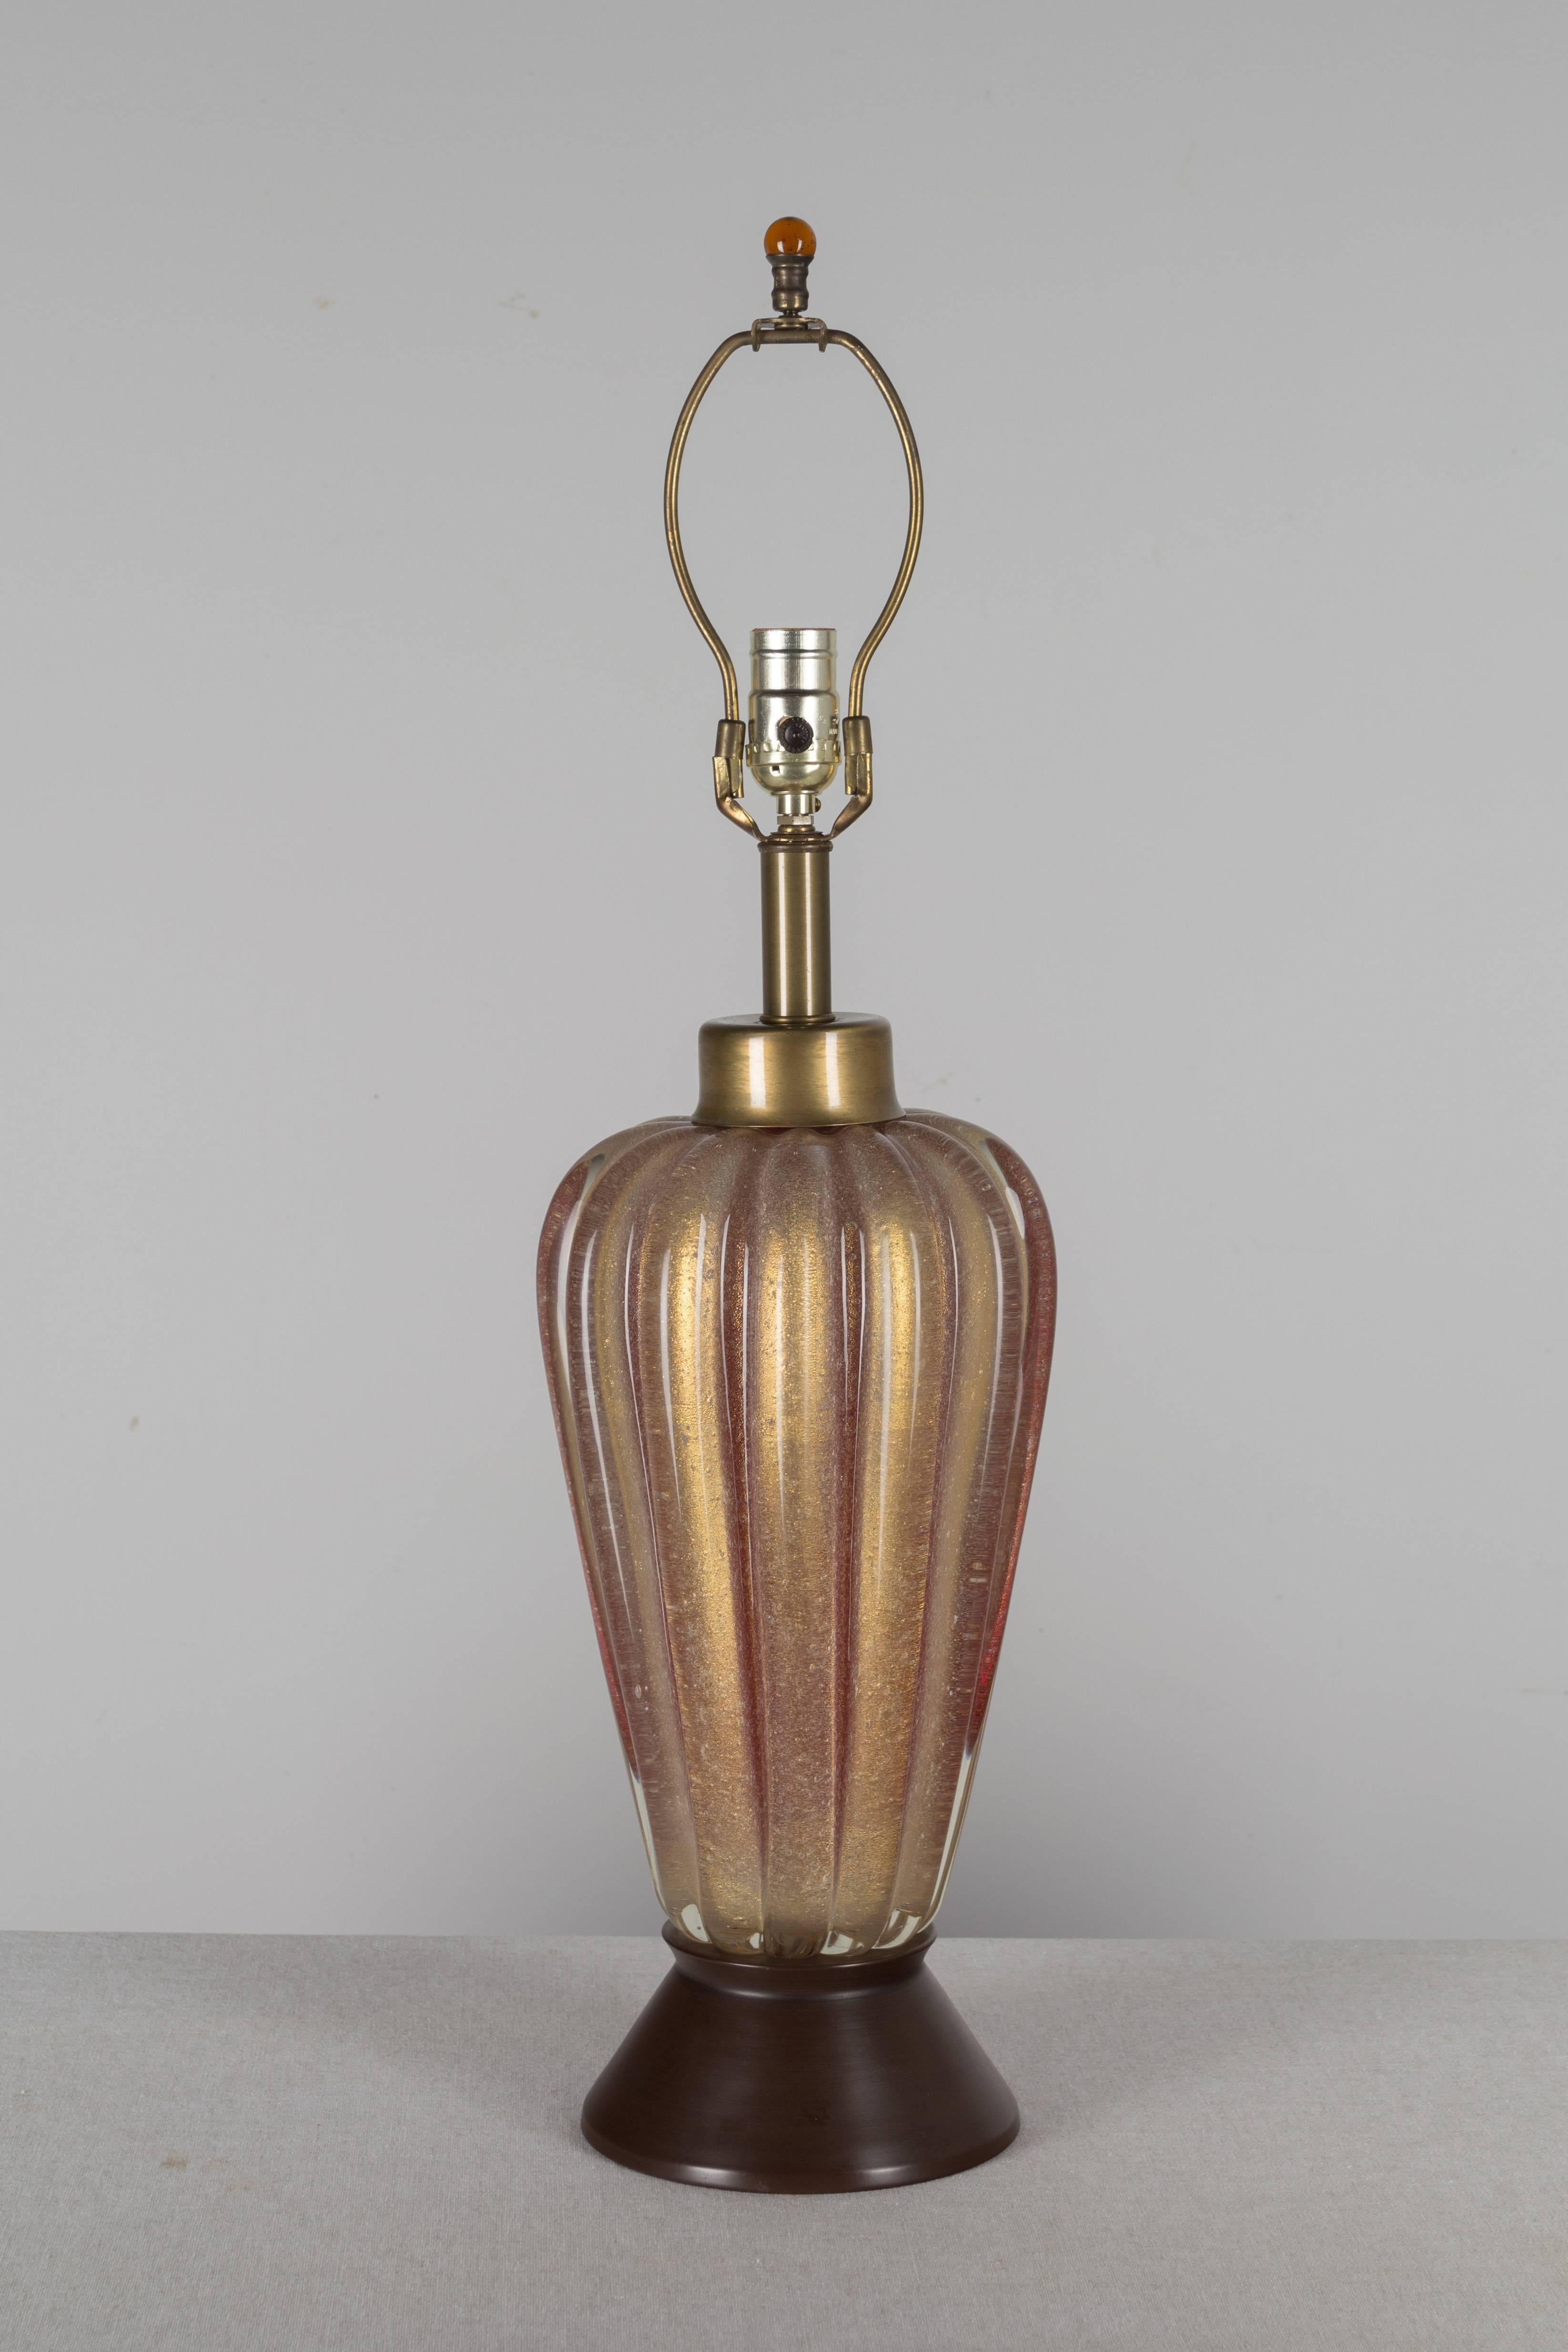 Lampe Murano par Seguso, verre épais et nervuré, soufflé à la main avec des bulles infusées. Le rouge avec de lourdes inclusions d'or donne au verre une couleur ambrée chaude. Base en métal. Rare, belle couleur. L'abat-jour en soie n'est pas inclus